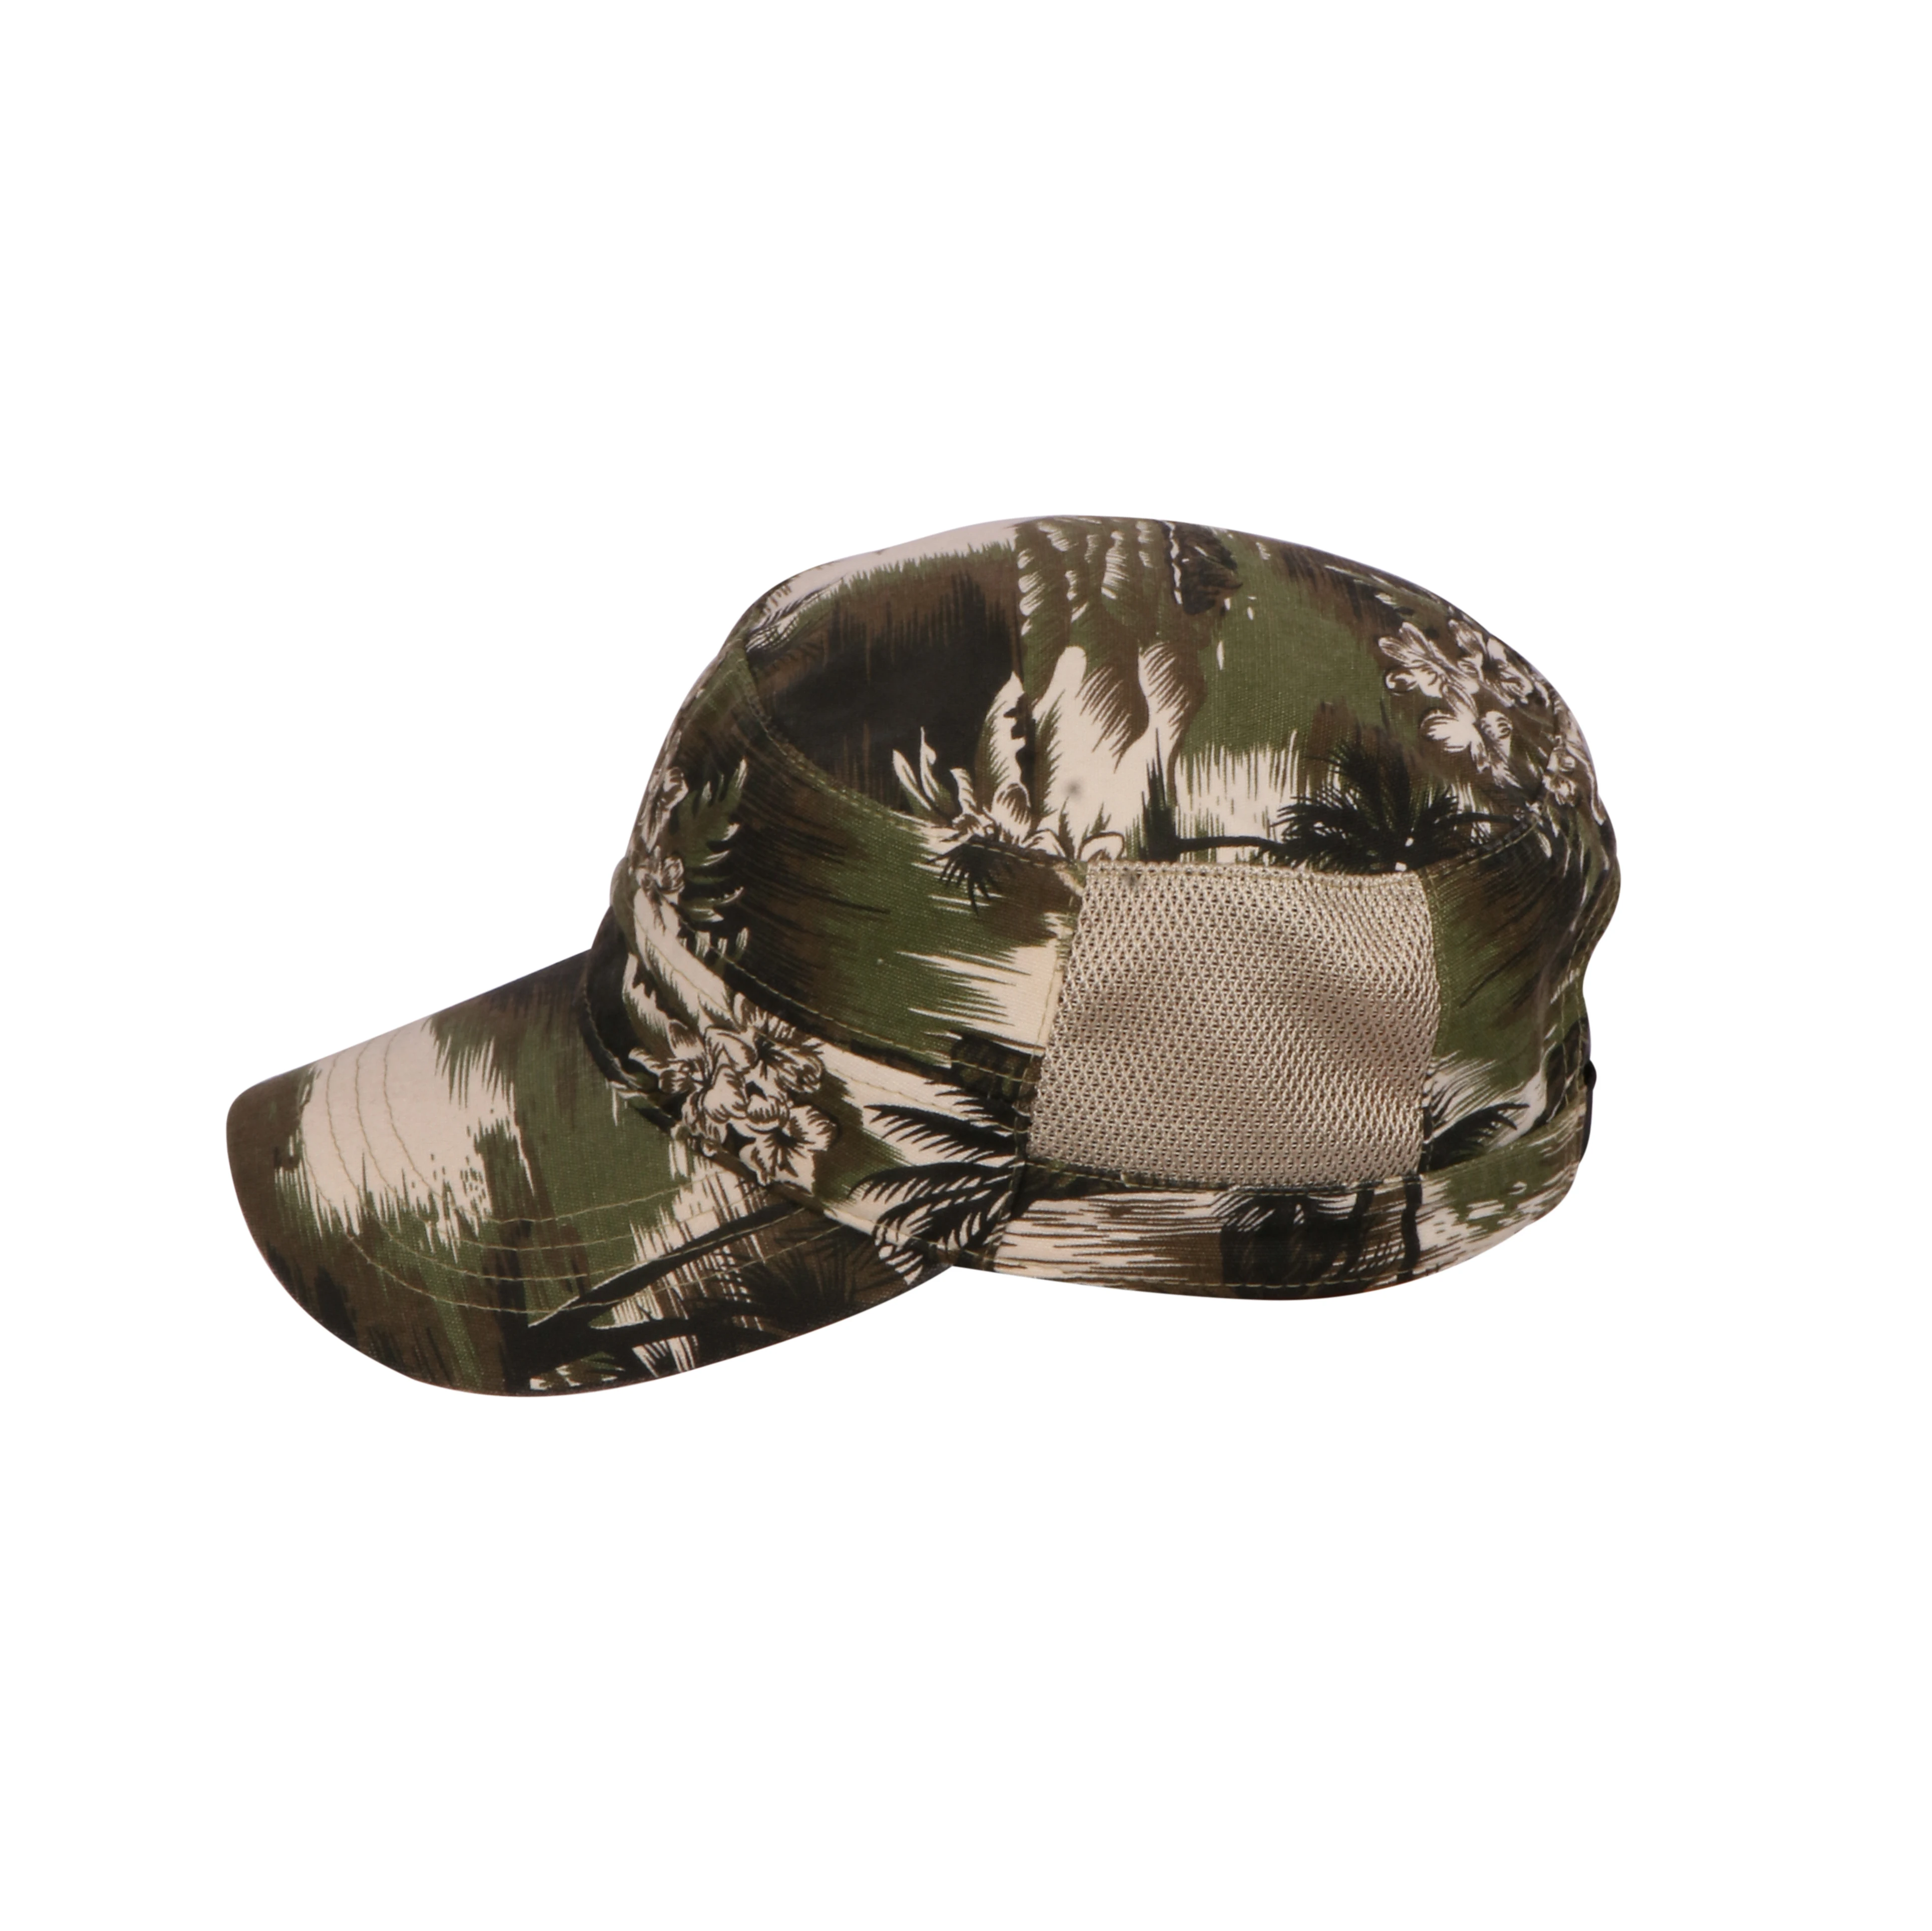 所有行业  时尚饰品  帽子 运动帽  产品名称: 网眼迷彩军用帽子 可选